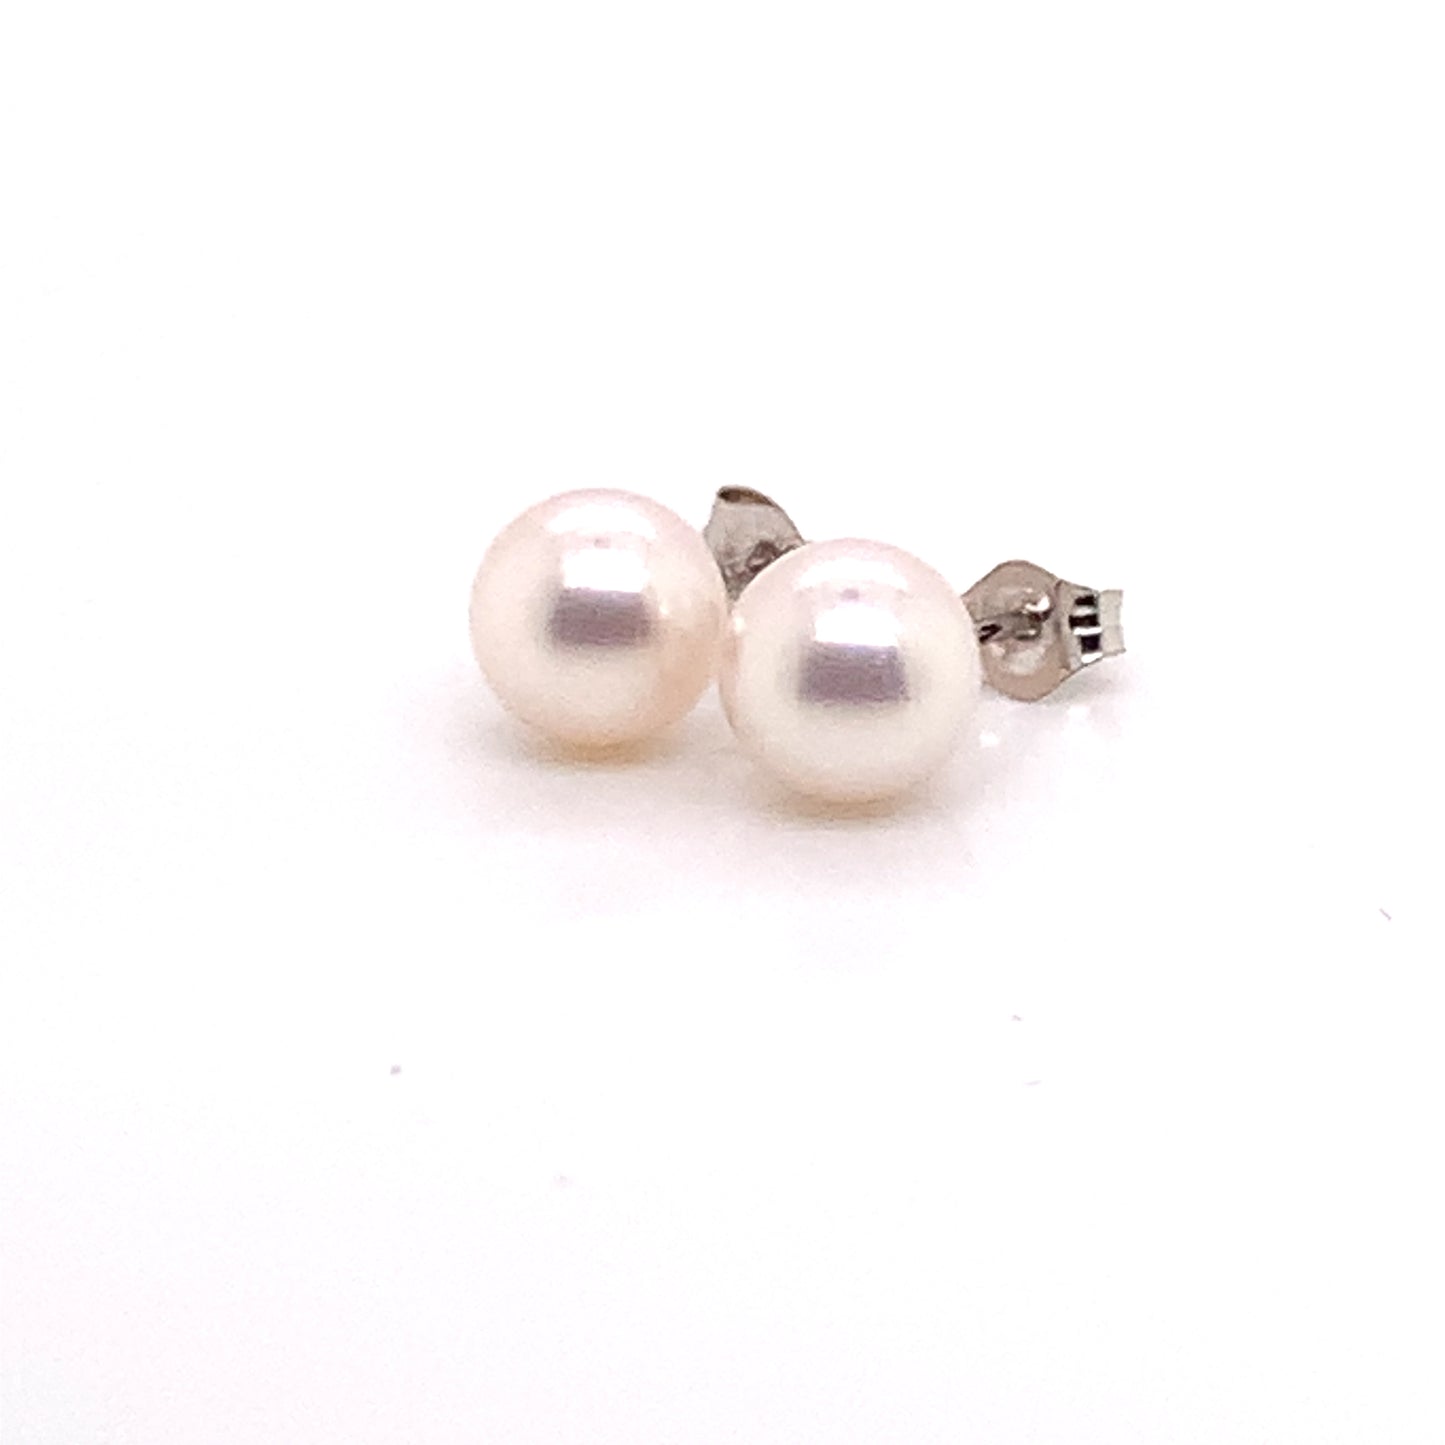 Akoya Pearl Earrings 14k White Gold 7.47 mm Certified $699 015872 - Certified Estate Jewelry